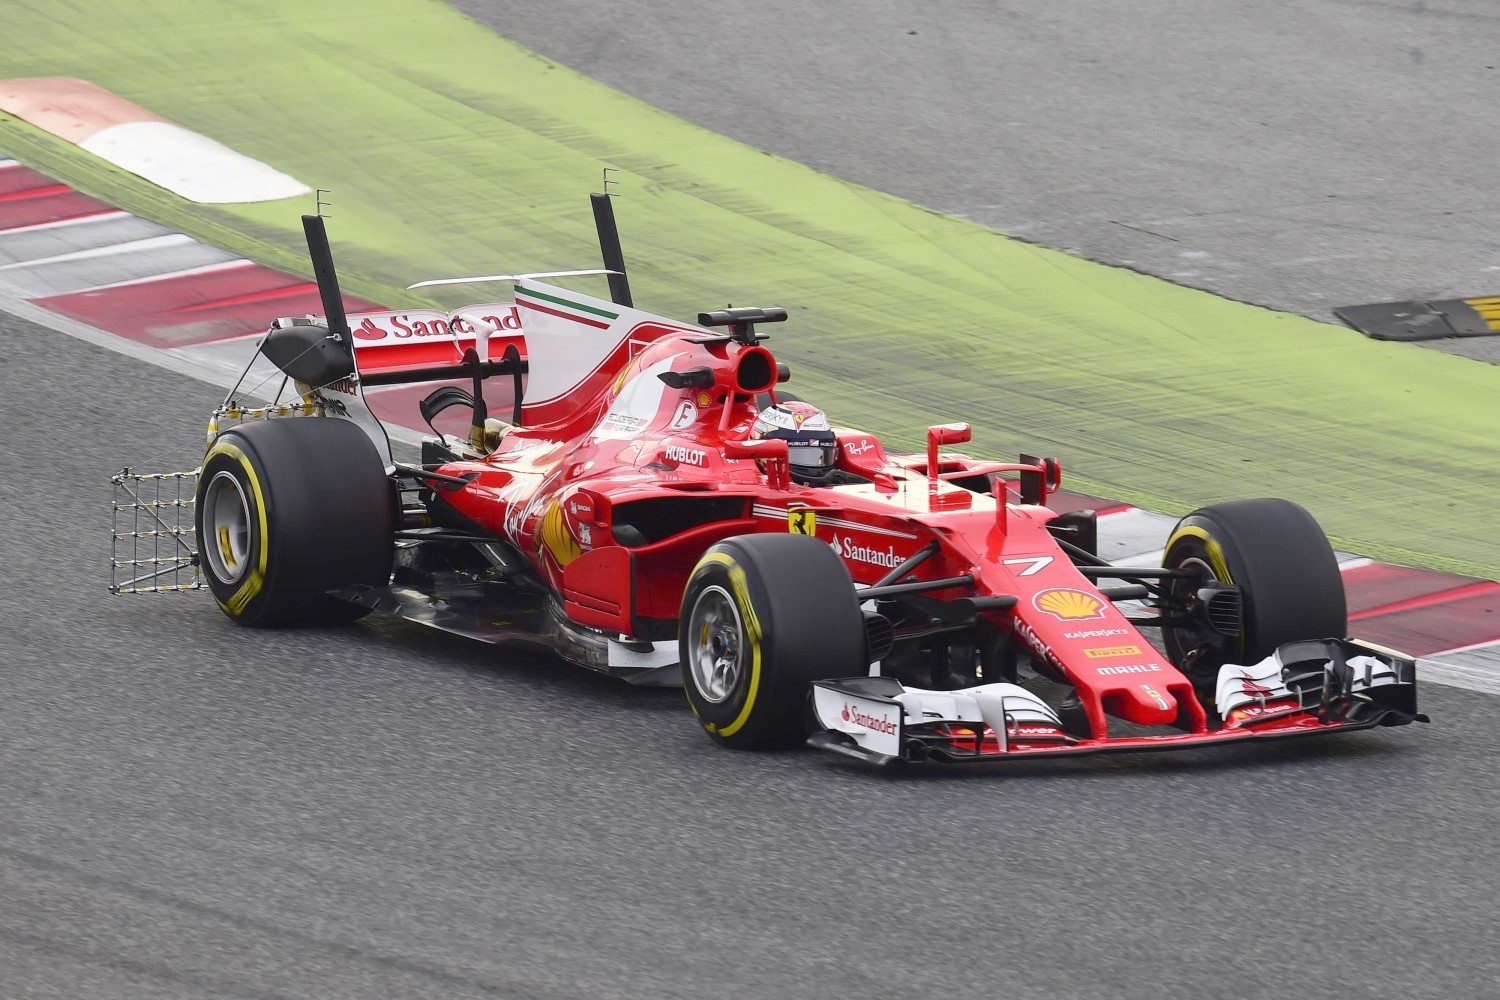 The Ferrari was fast until Raikkonen wadded it up yesterday